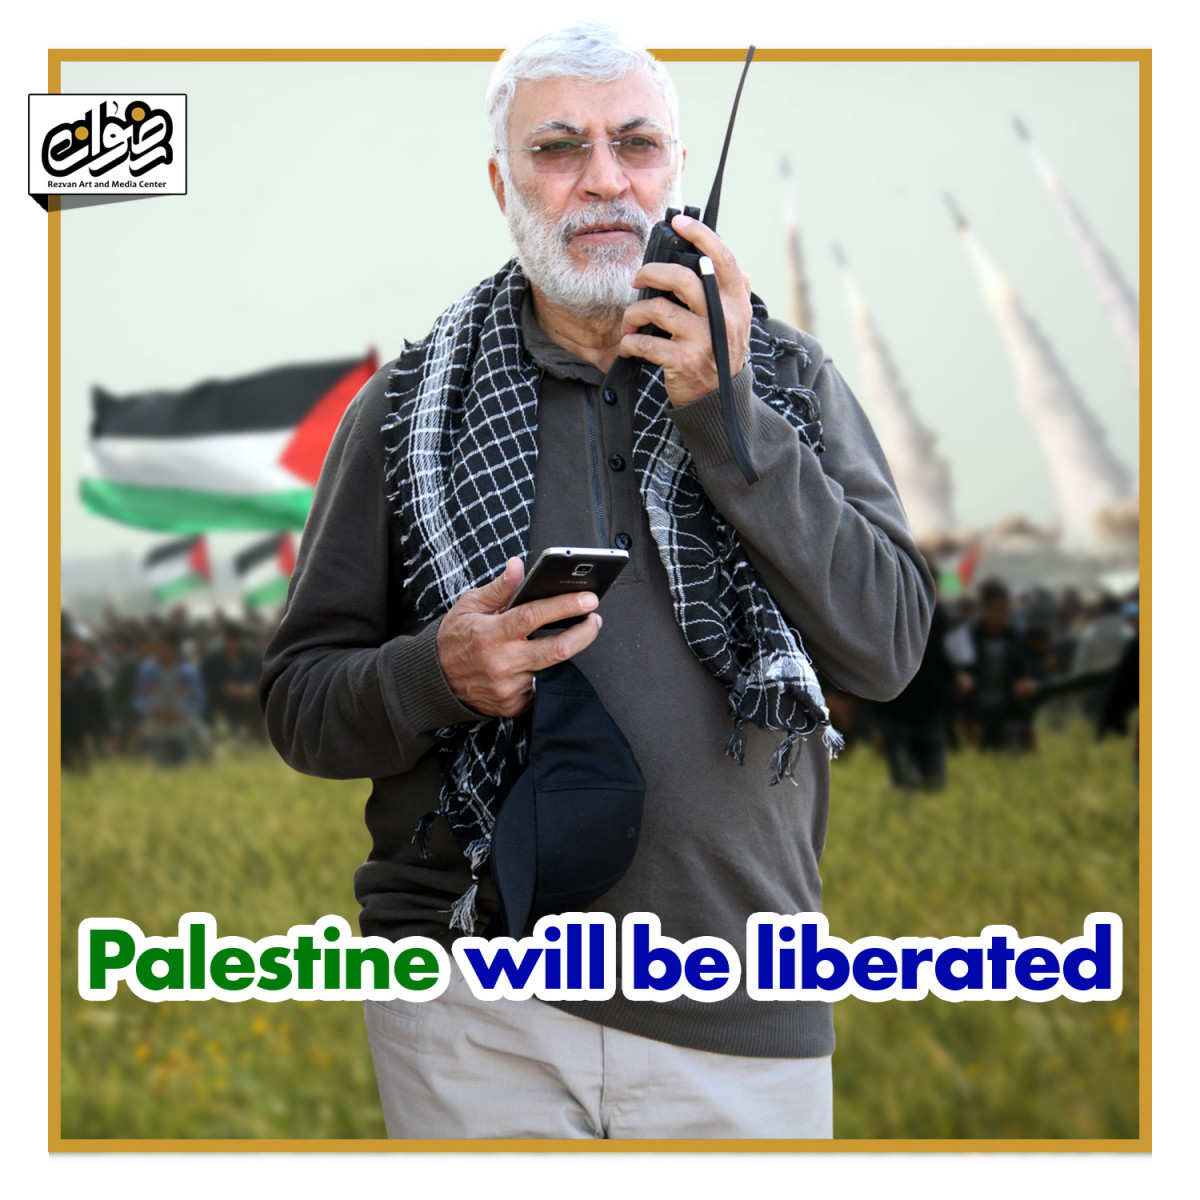 Abu mahdi al-muhandis: Palestine will be liberated